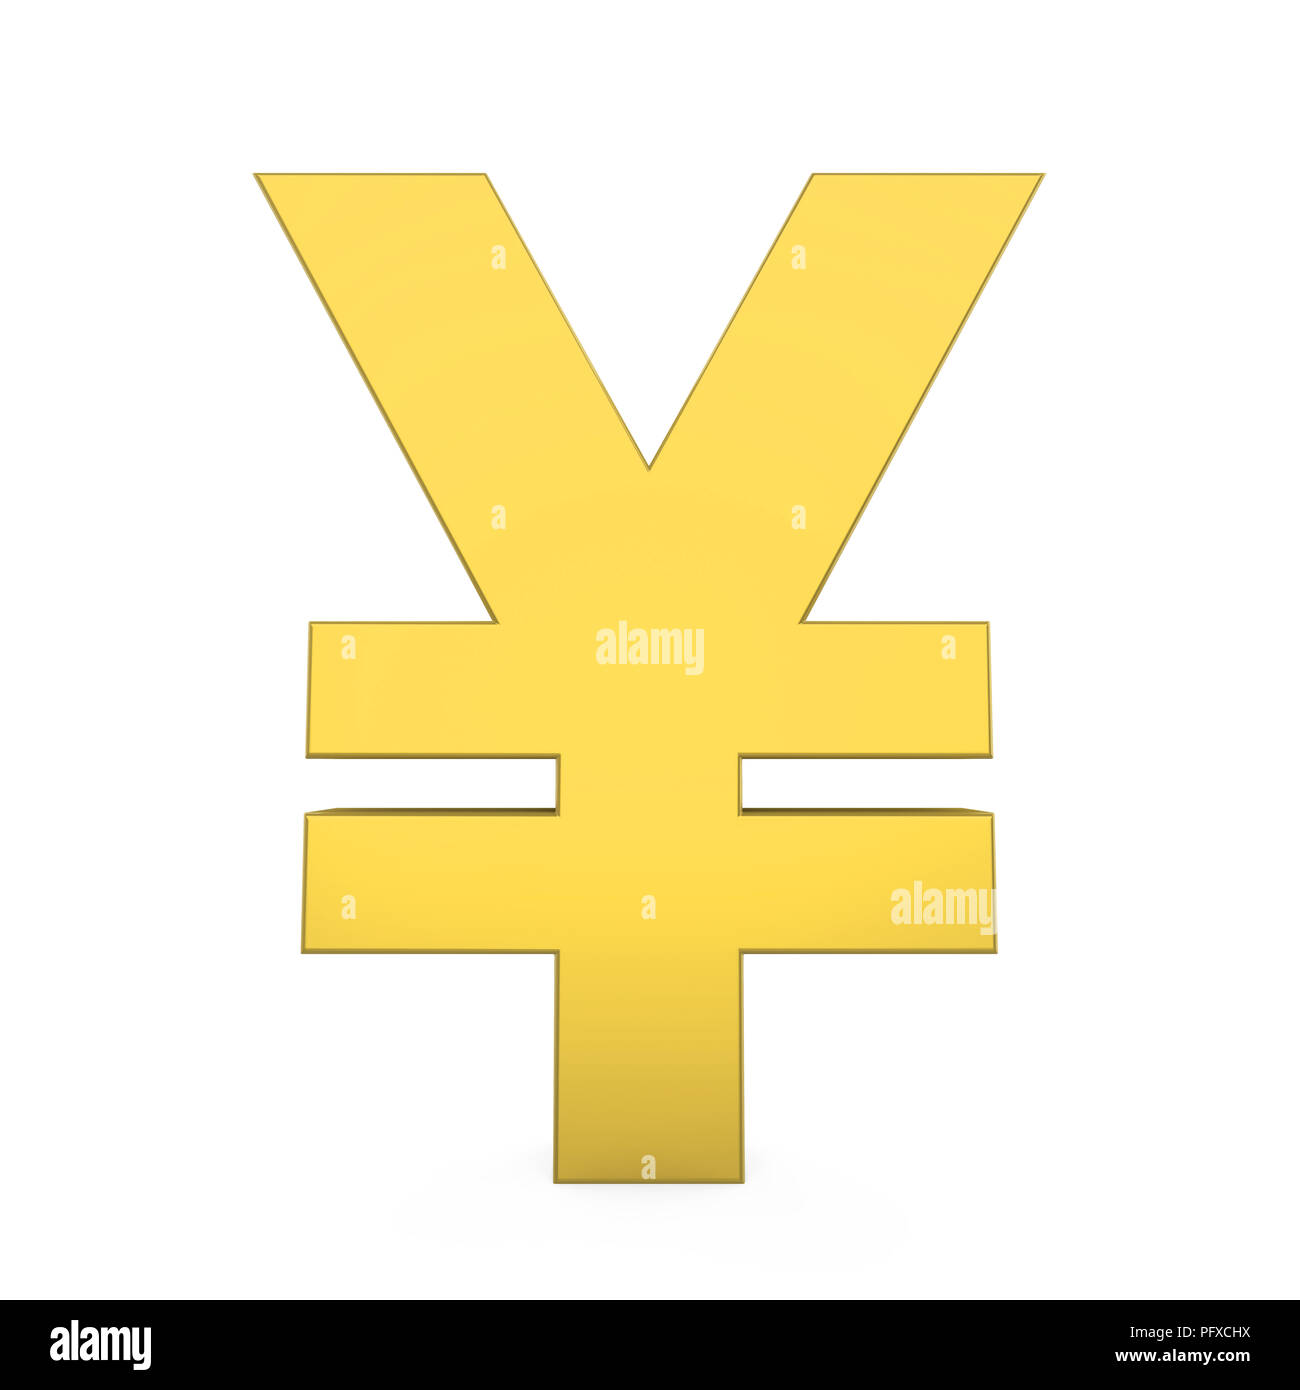 yuan sign